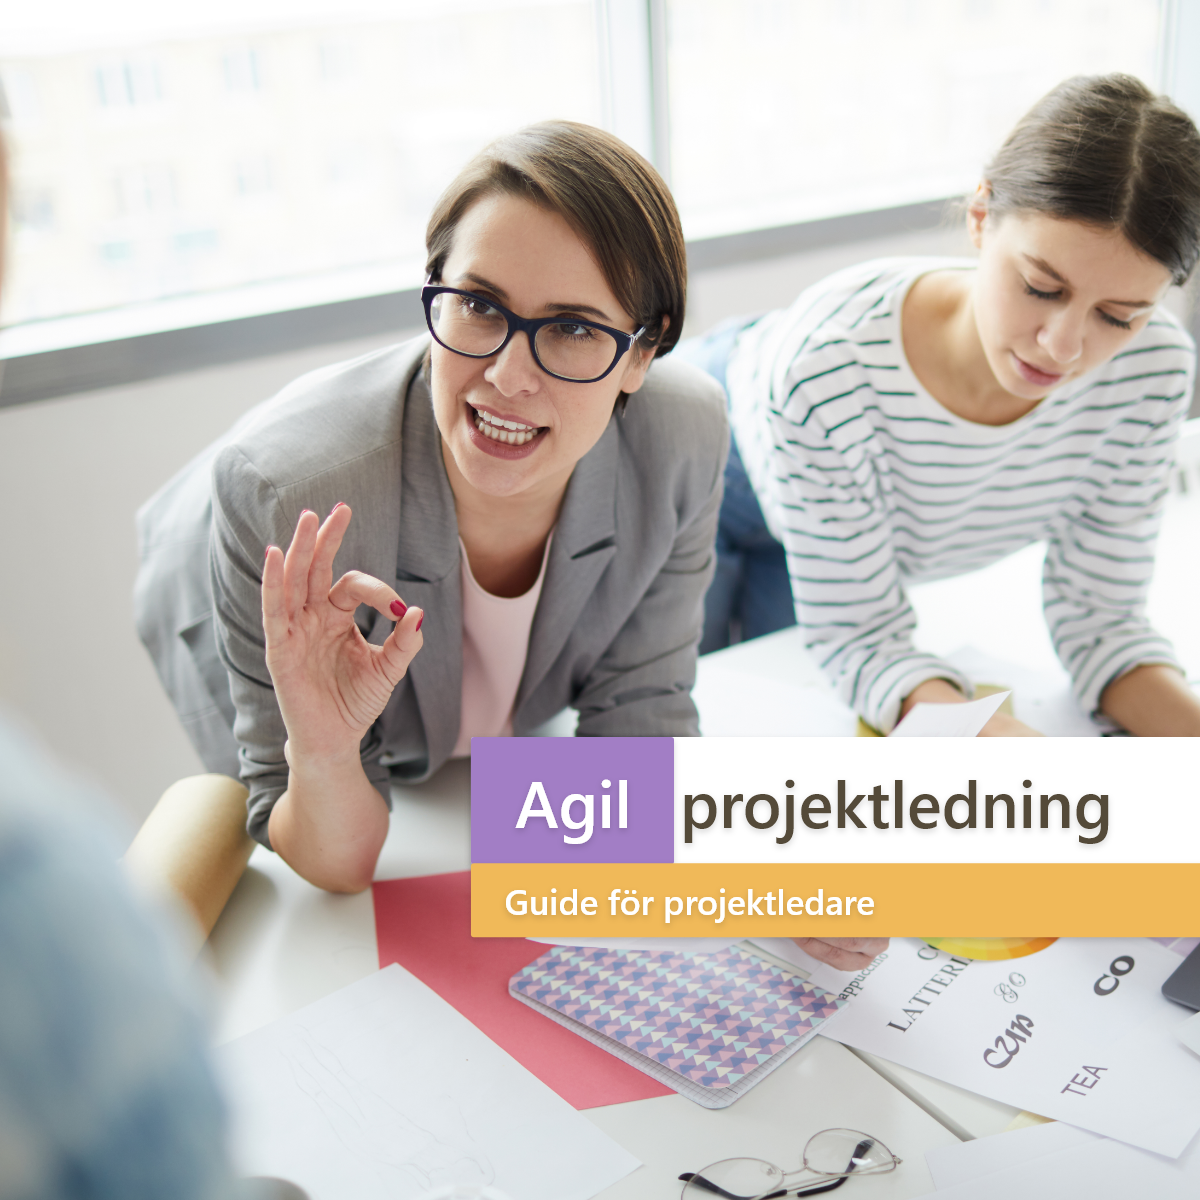 Agil projektledning: projektledarens guide till framgång